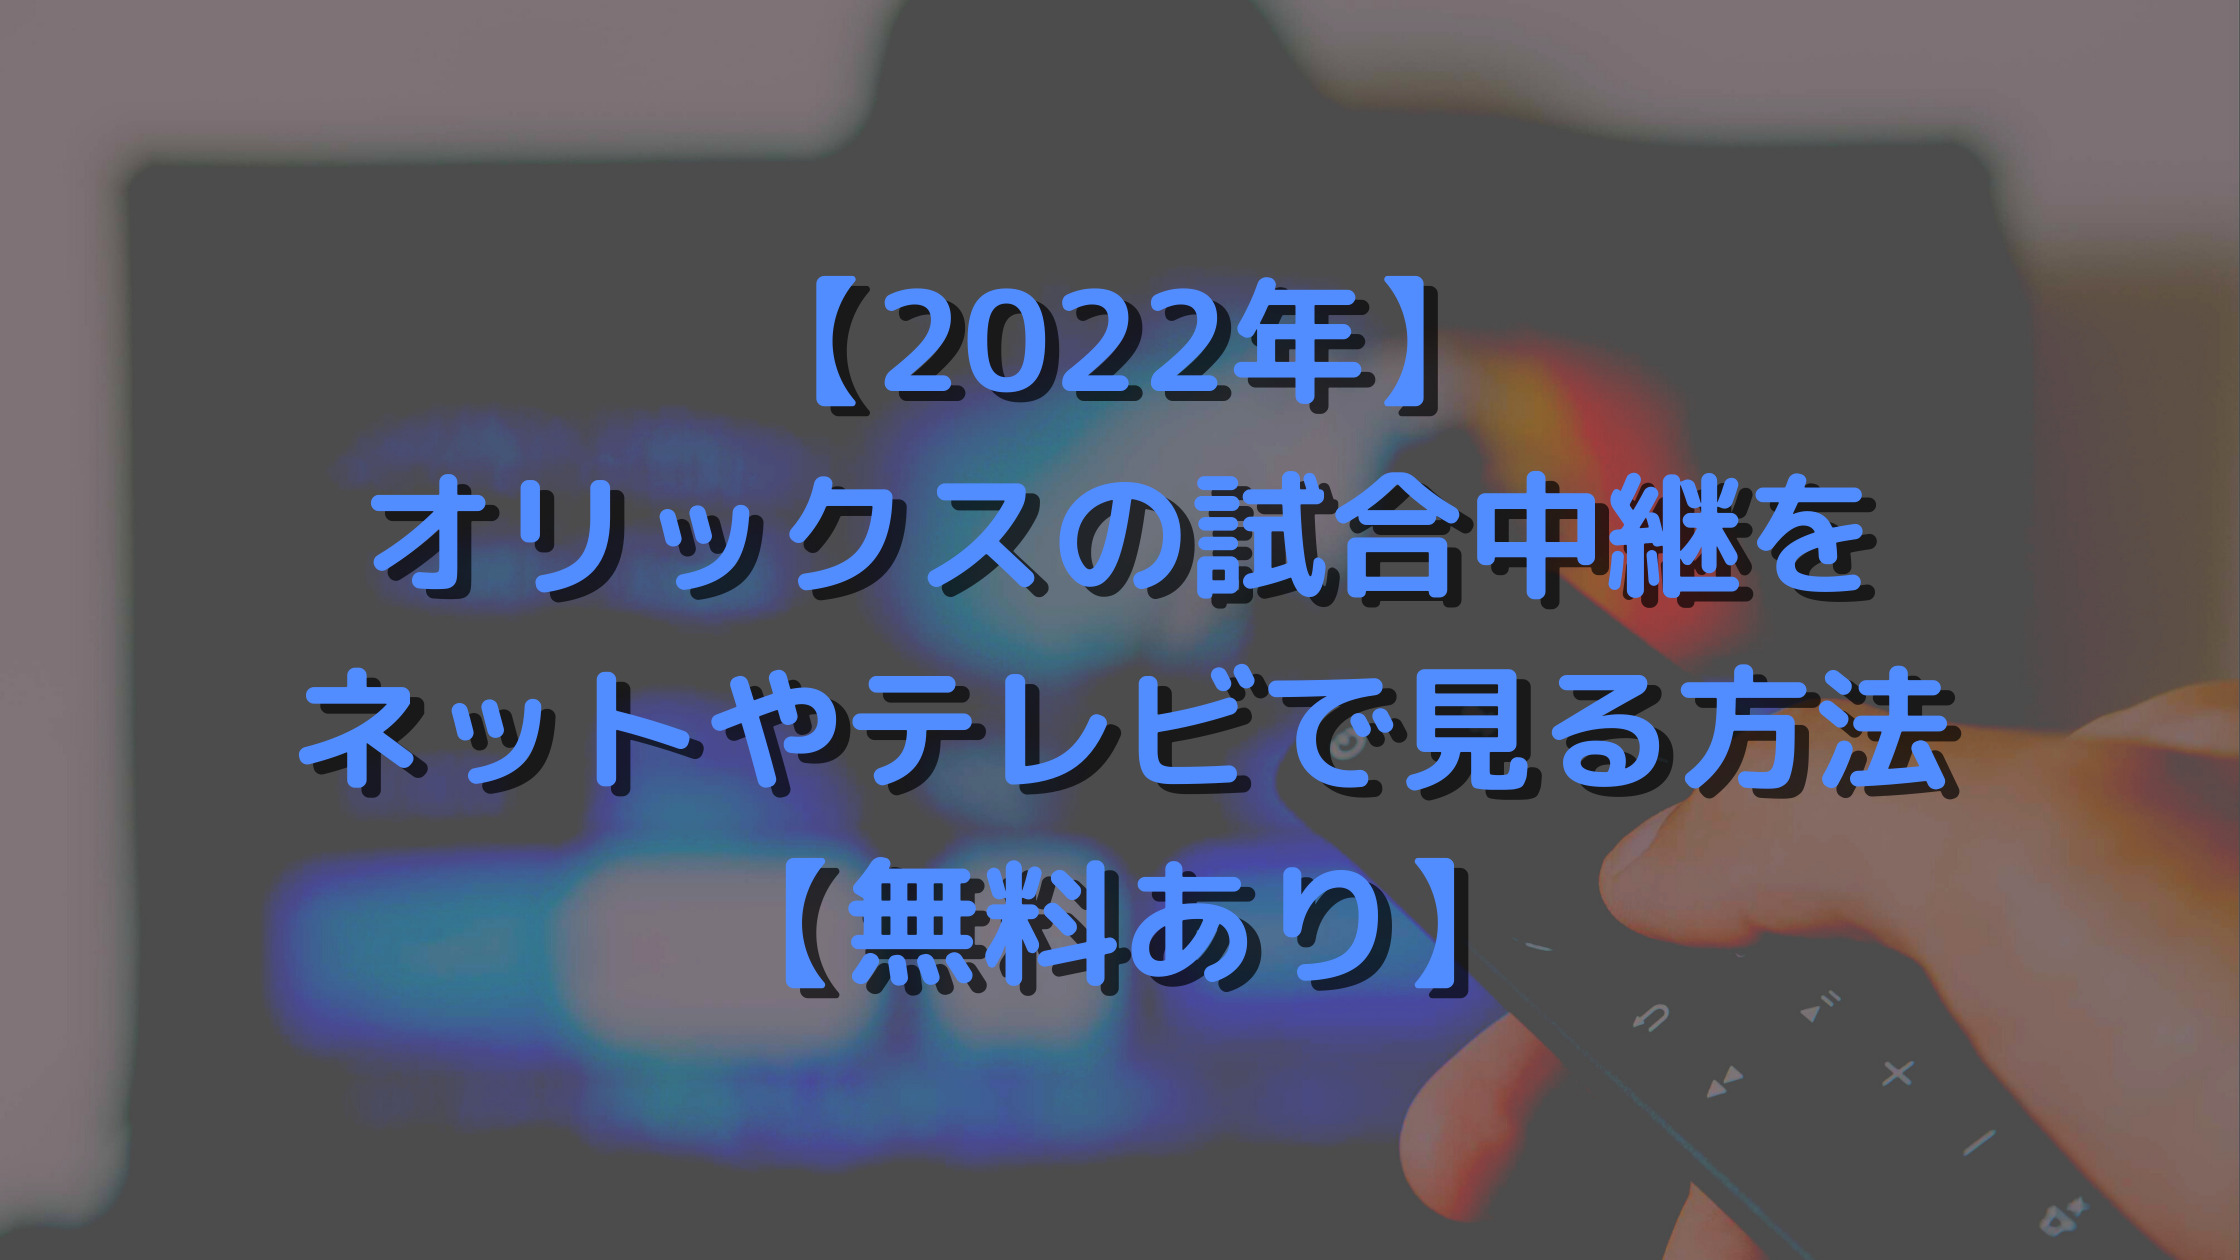 【2022年】オリックスの試合中継をネットやテレビで見る方法【無料あり】